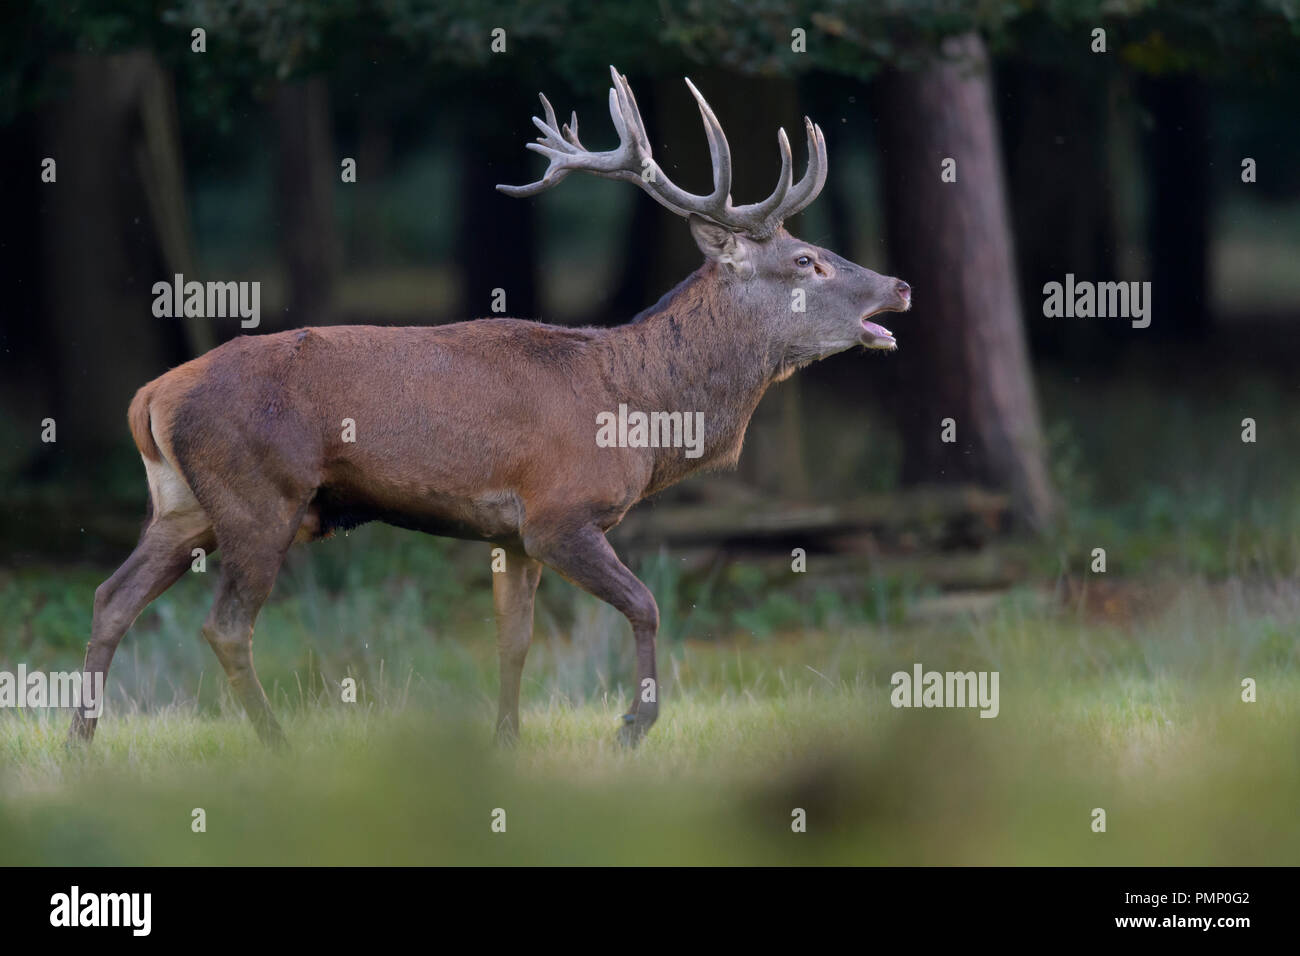 Red Deer, Cervus elaphus, Rutting Season, Roaring, Germany, Europe Stock Photo